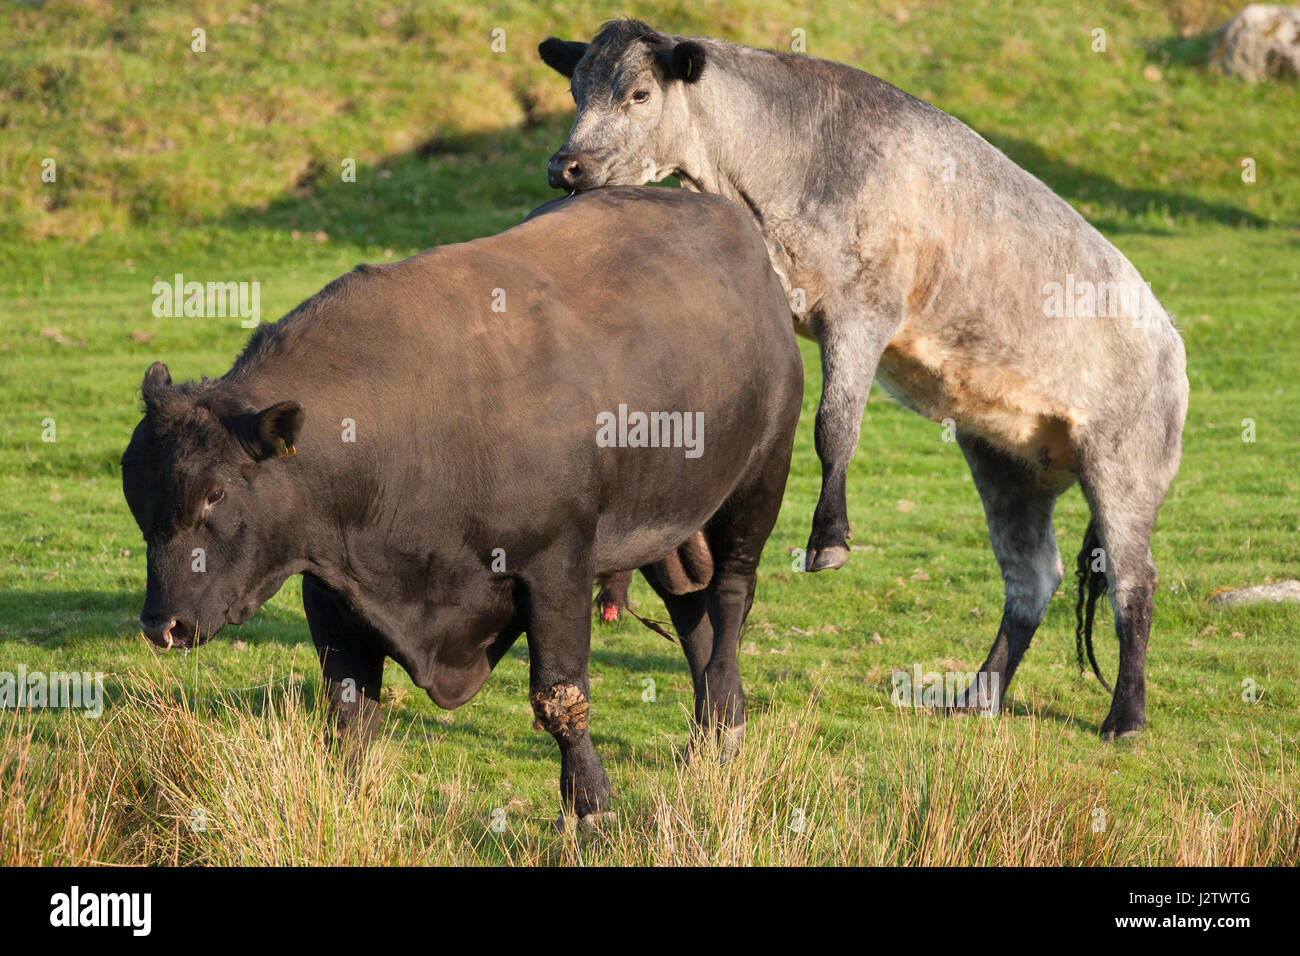 El ganado vacuno, solo adulto femenino único montaje Aberdeen Angus, Bull, Aviemore, Escocia, Reino Unido Foto de stock